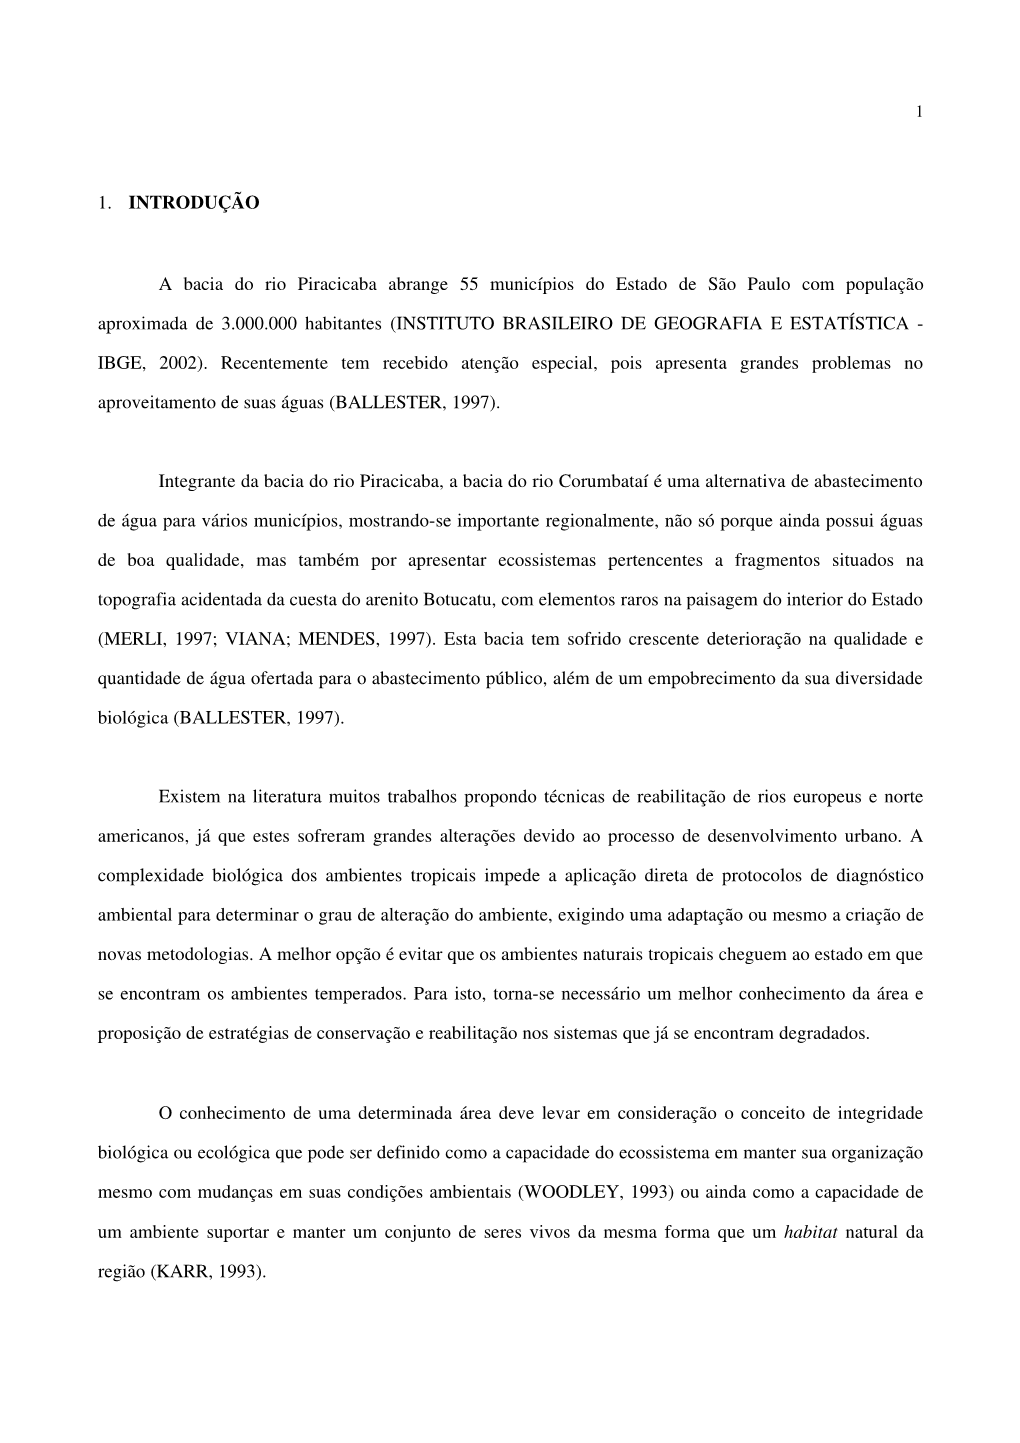 1. INTRODUÇÃO a Bacia Do Rio Piracicaba Abrange 55 Municípios Do Estado De São Paulo